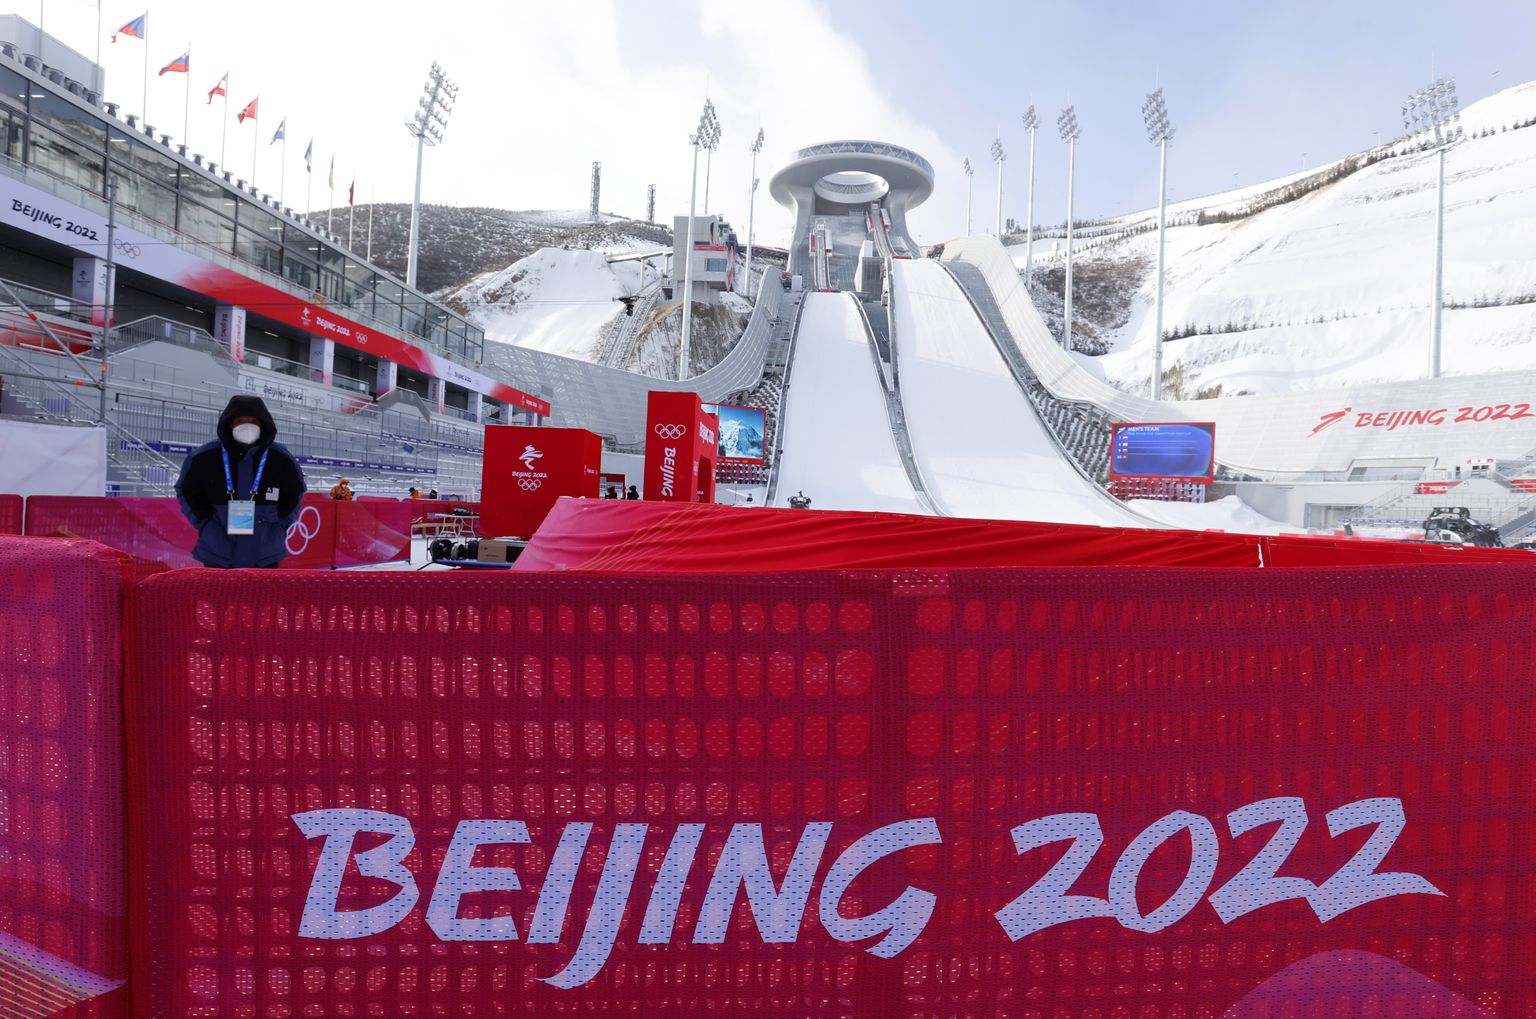 Hiina Pekingi 2022 taliolümpiamängude suusahüppeareen Zhangjiakous. Olümpiamängud kestavad 4.–20. veebruarini 2022